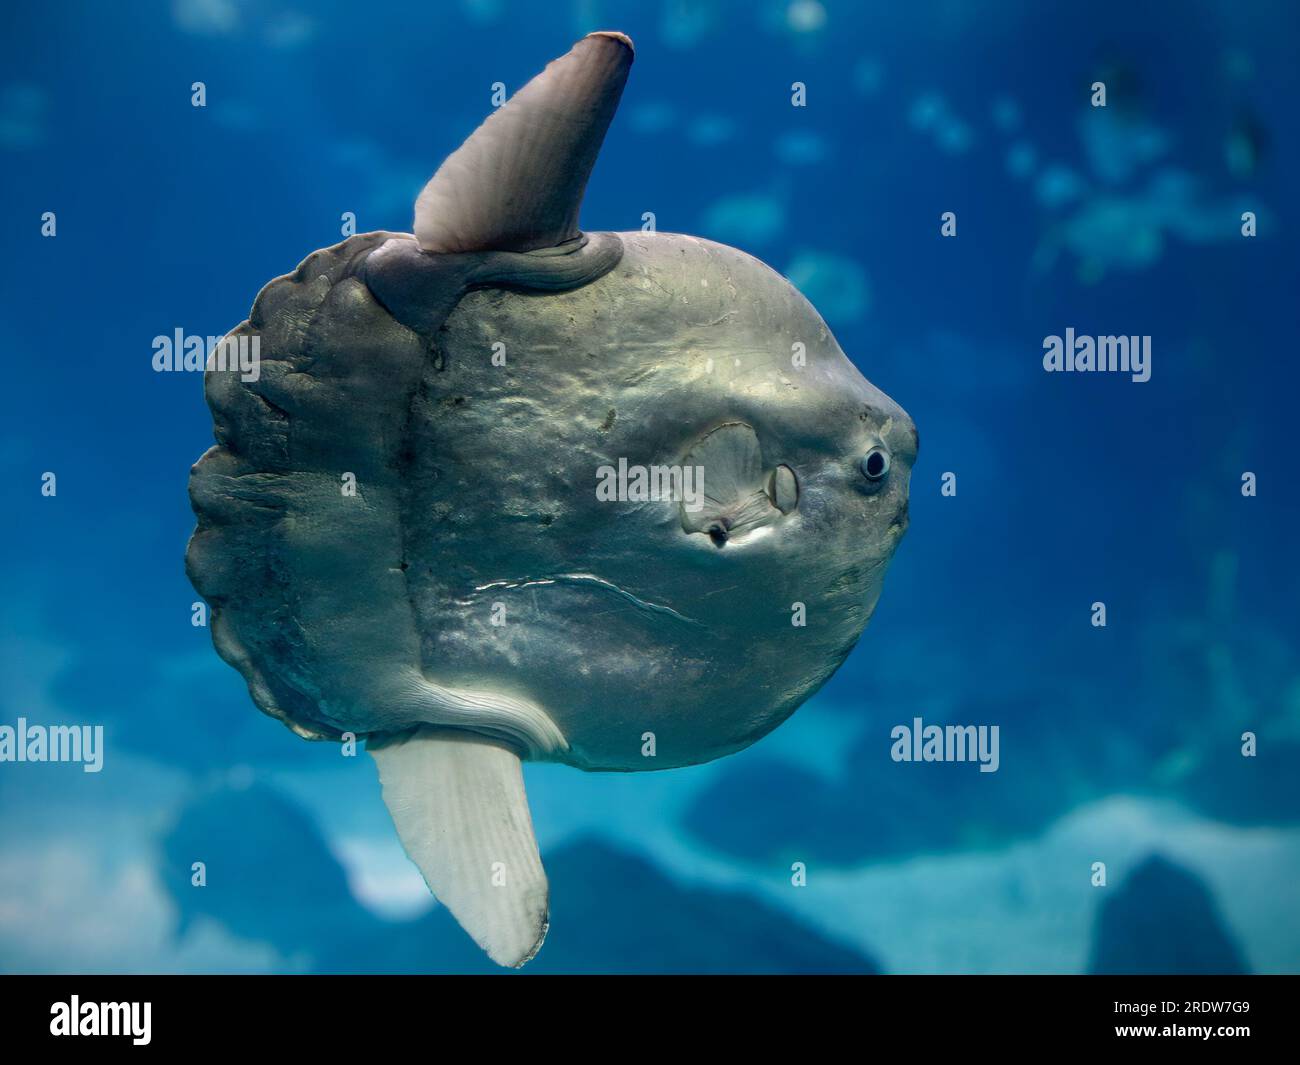 Sunfish closeup. Salt water aquarium photo. Stock Photo